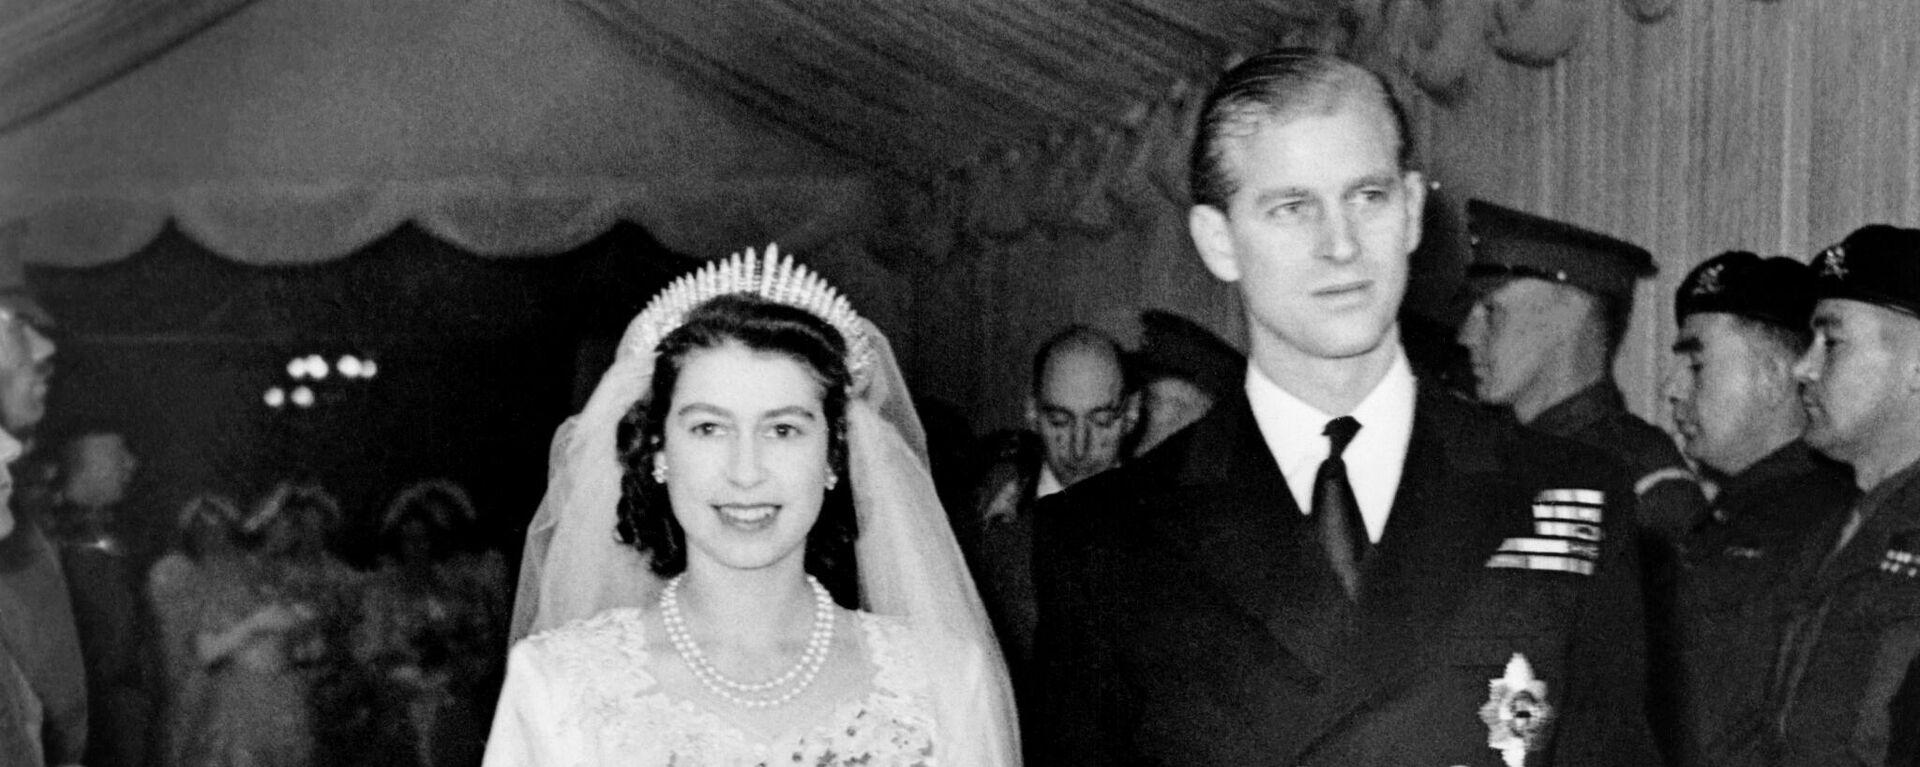 La boda de Isabel y el príncipe Felipe - Sputnik Mundo, 1920, 20.03.2021